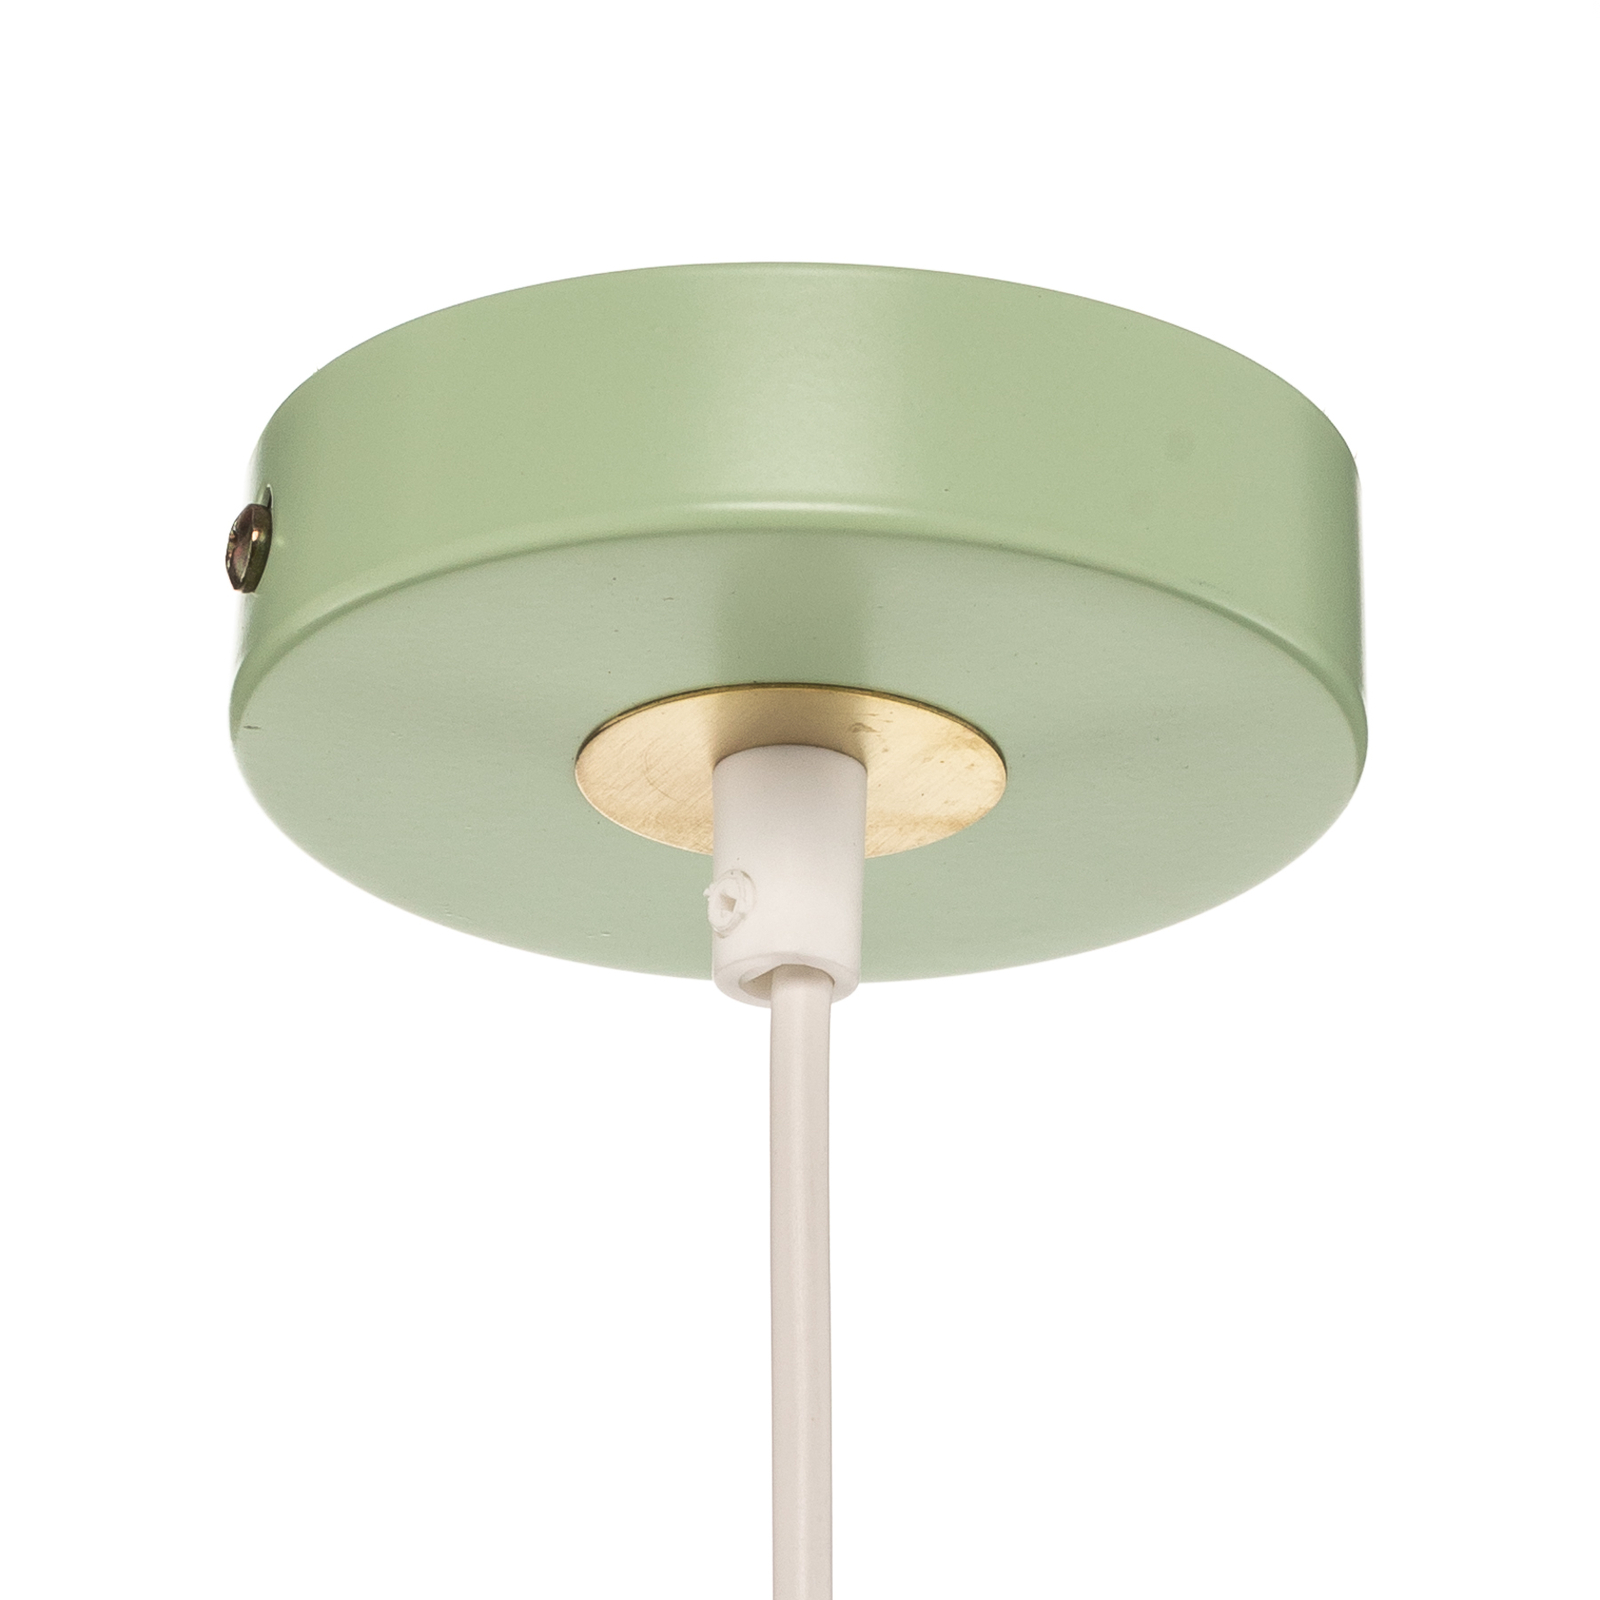 Lampa wisząca Malmo z miętowo-zielonym kloszem